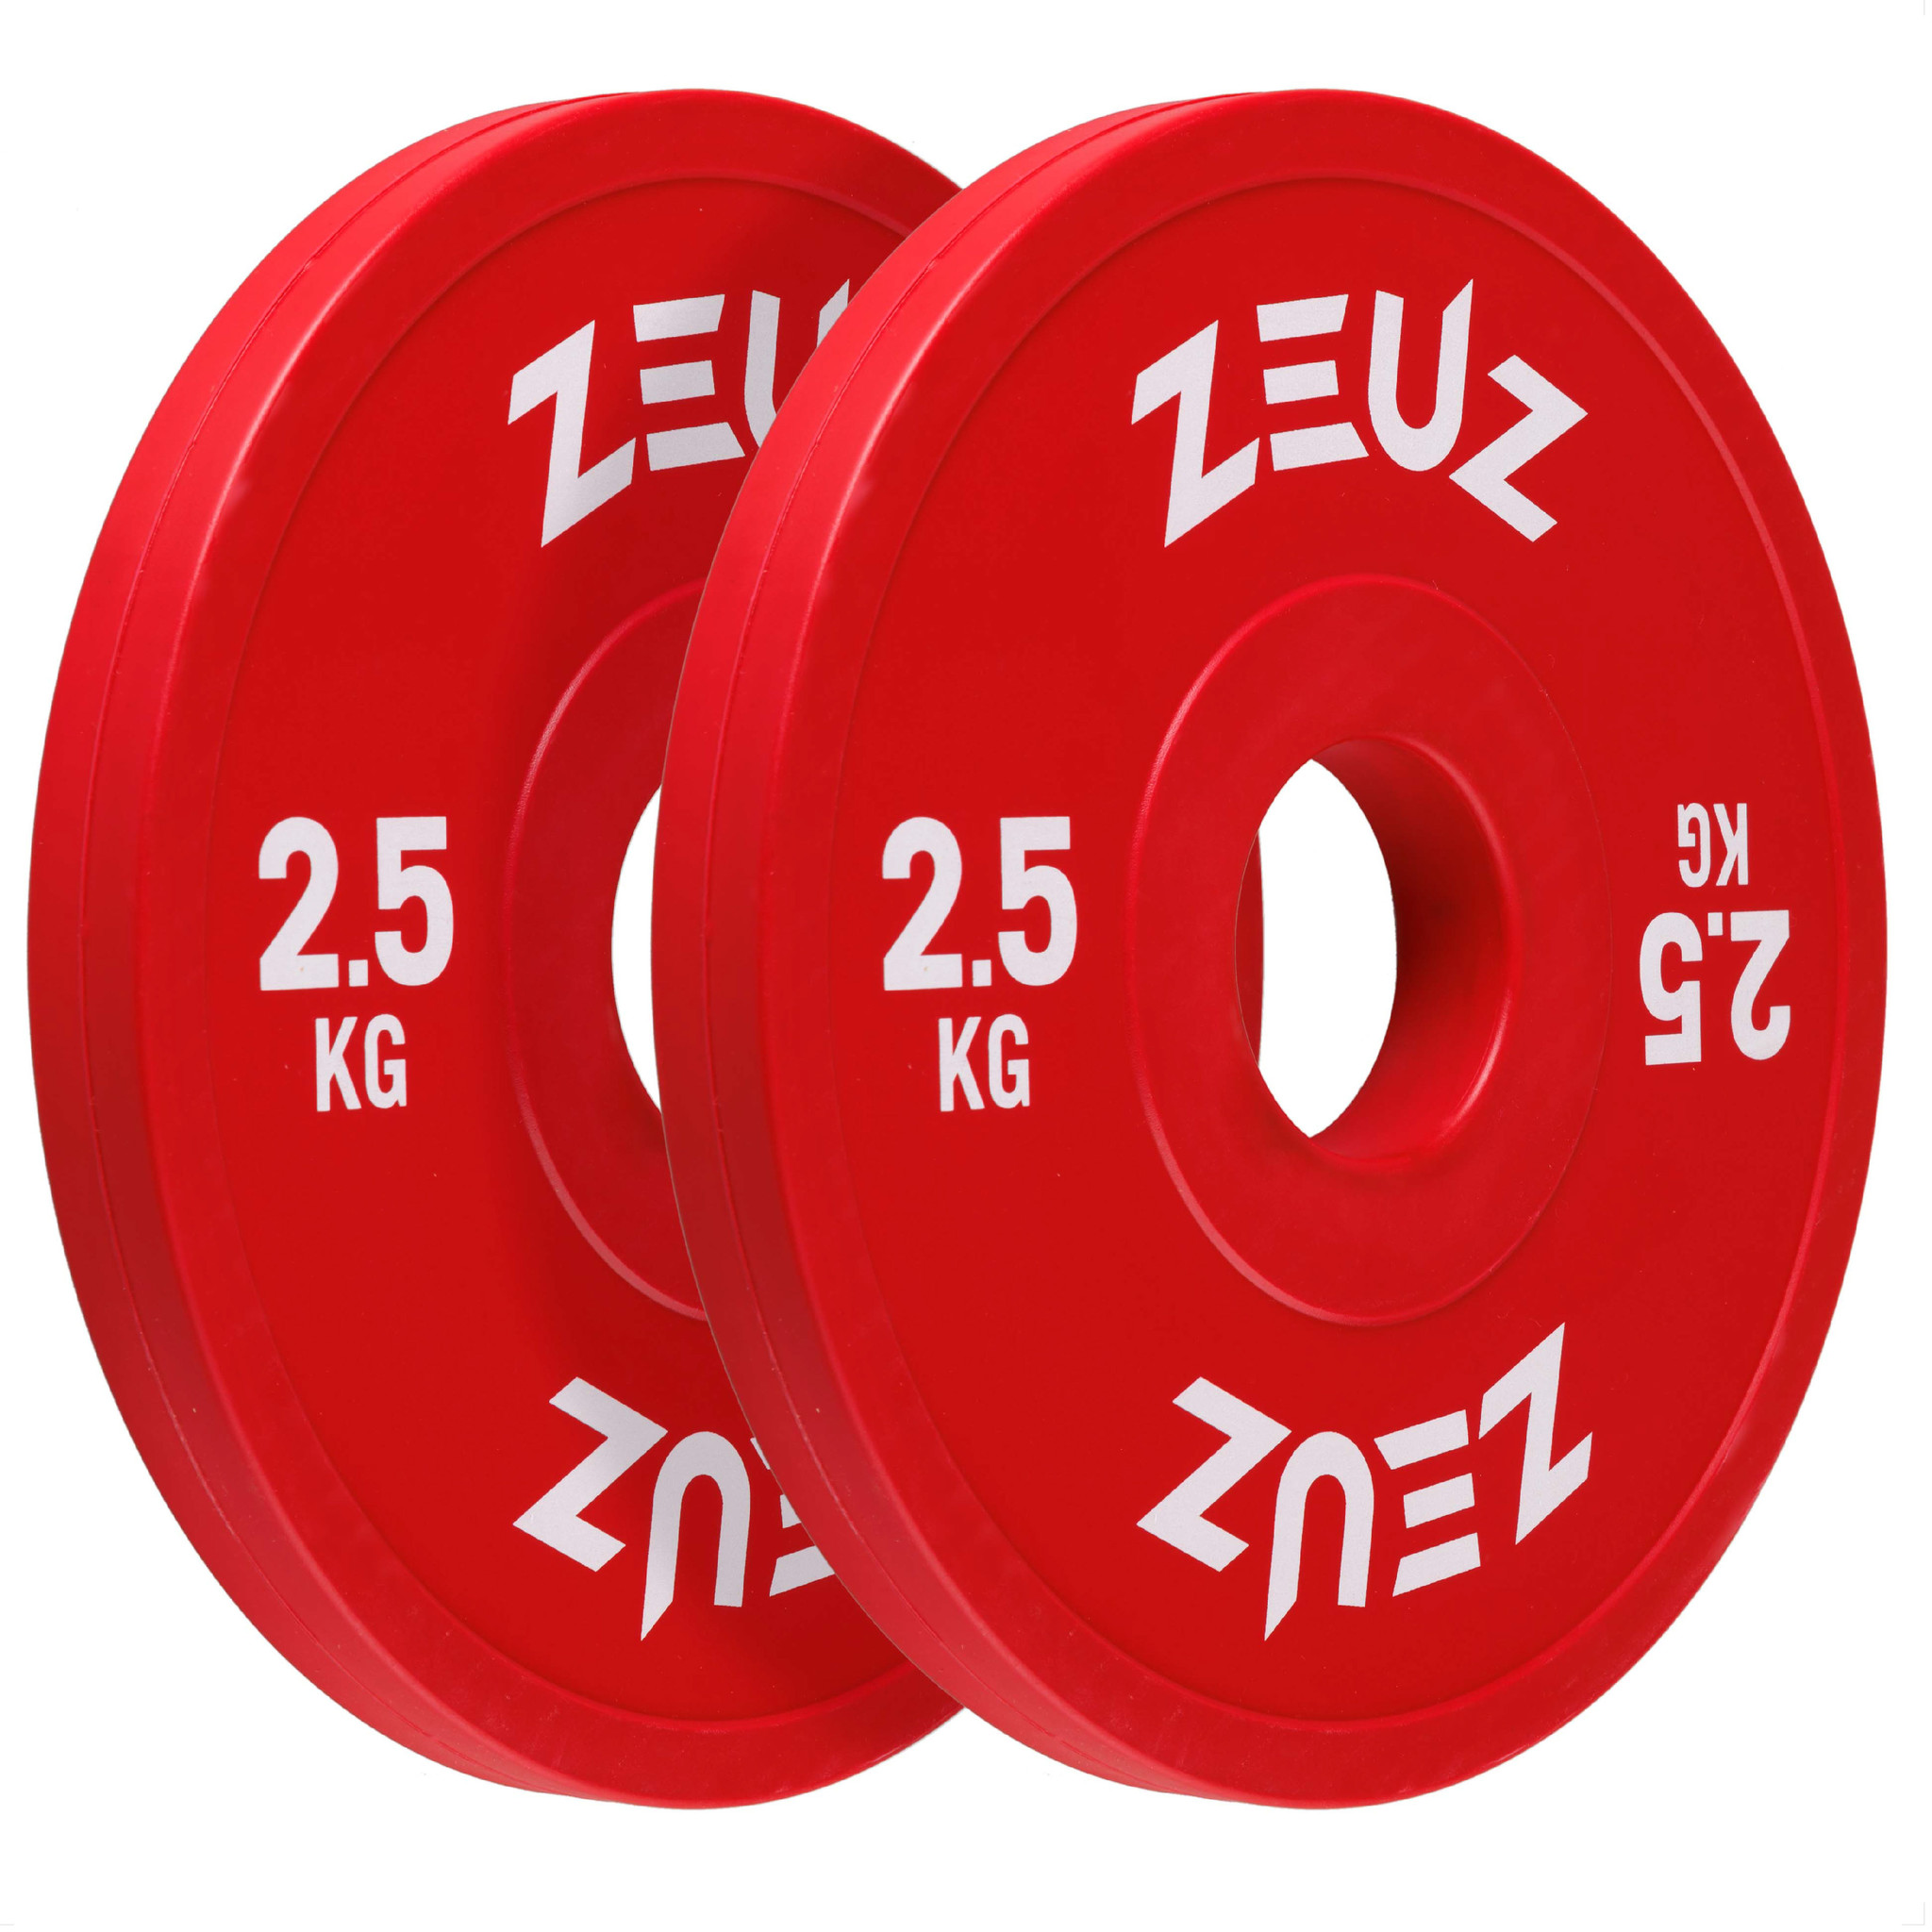 verstoring Initiatief Ga trouwen ZEUZ® Halterschijf 2 Stuks 2,5 KG – 5 KG Gewichten Set – voor 50 mm Halter  – Crossfit & Fitness – Metaal & Rubber - ZEUZ